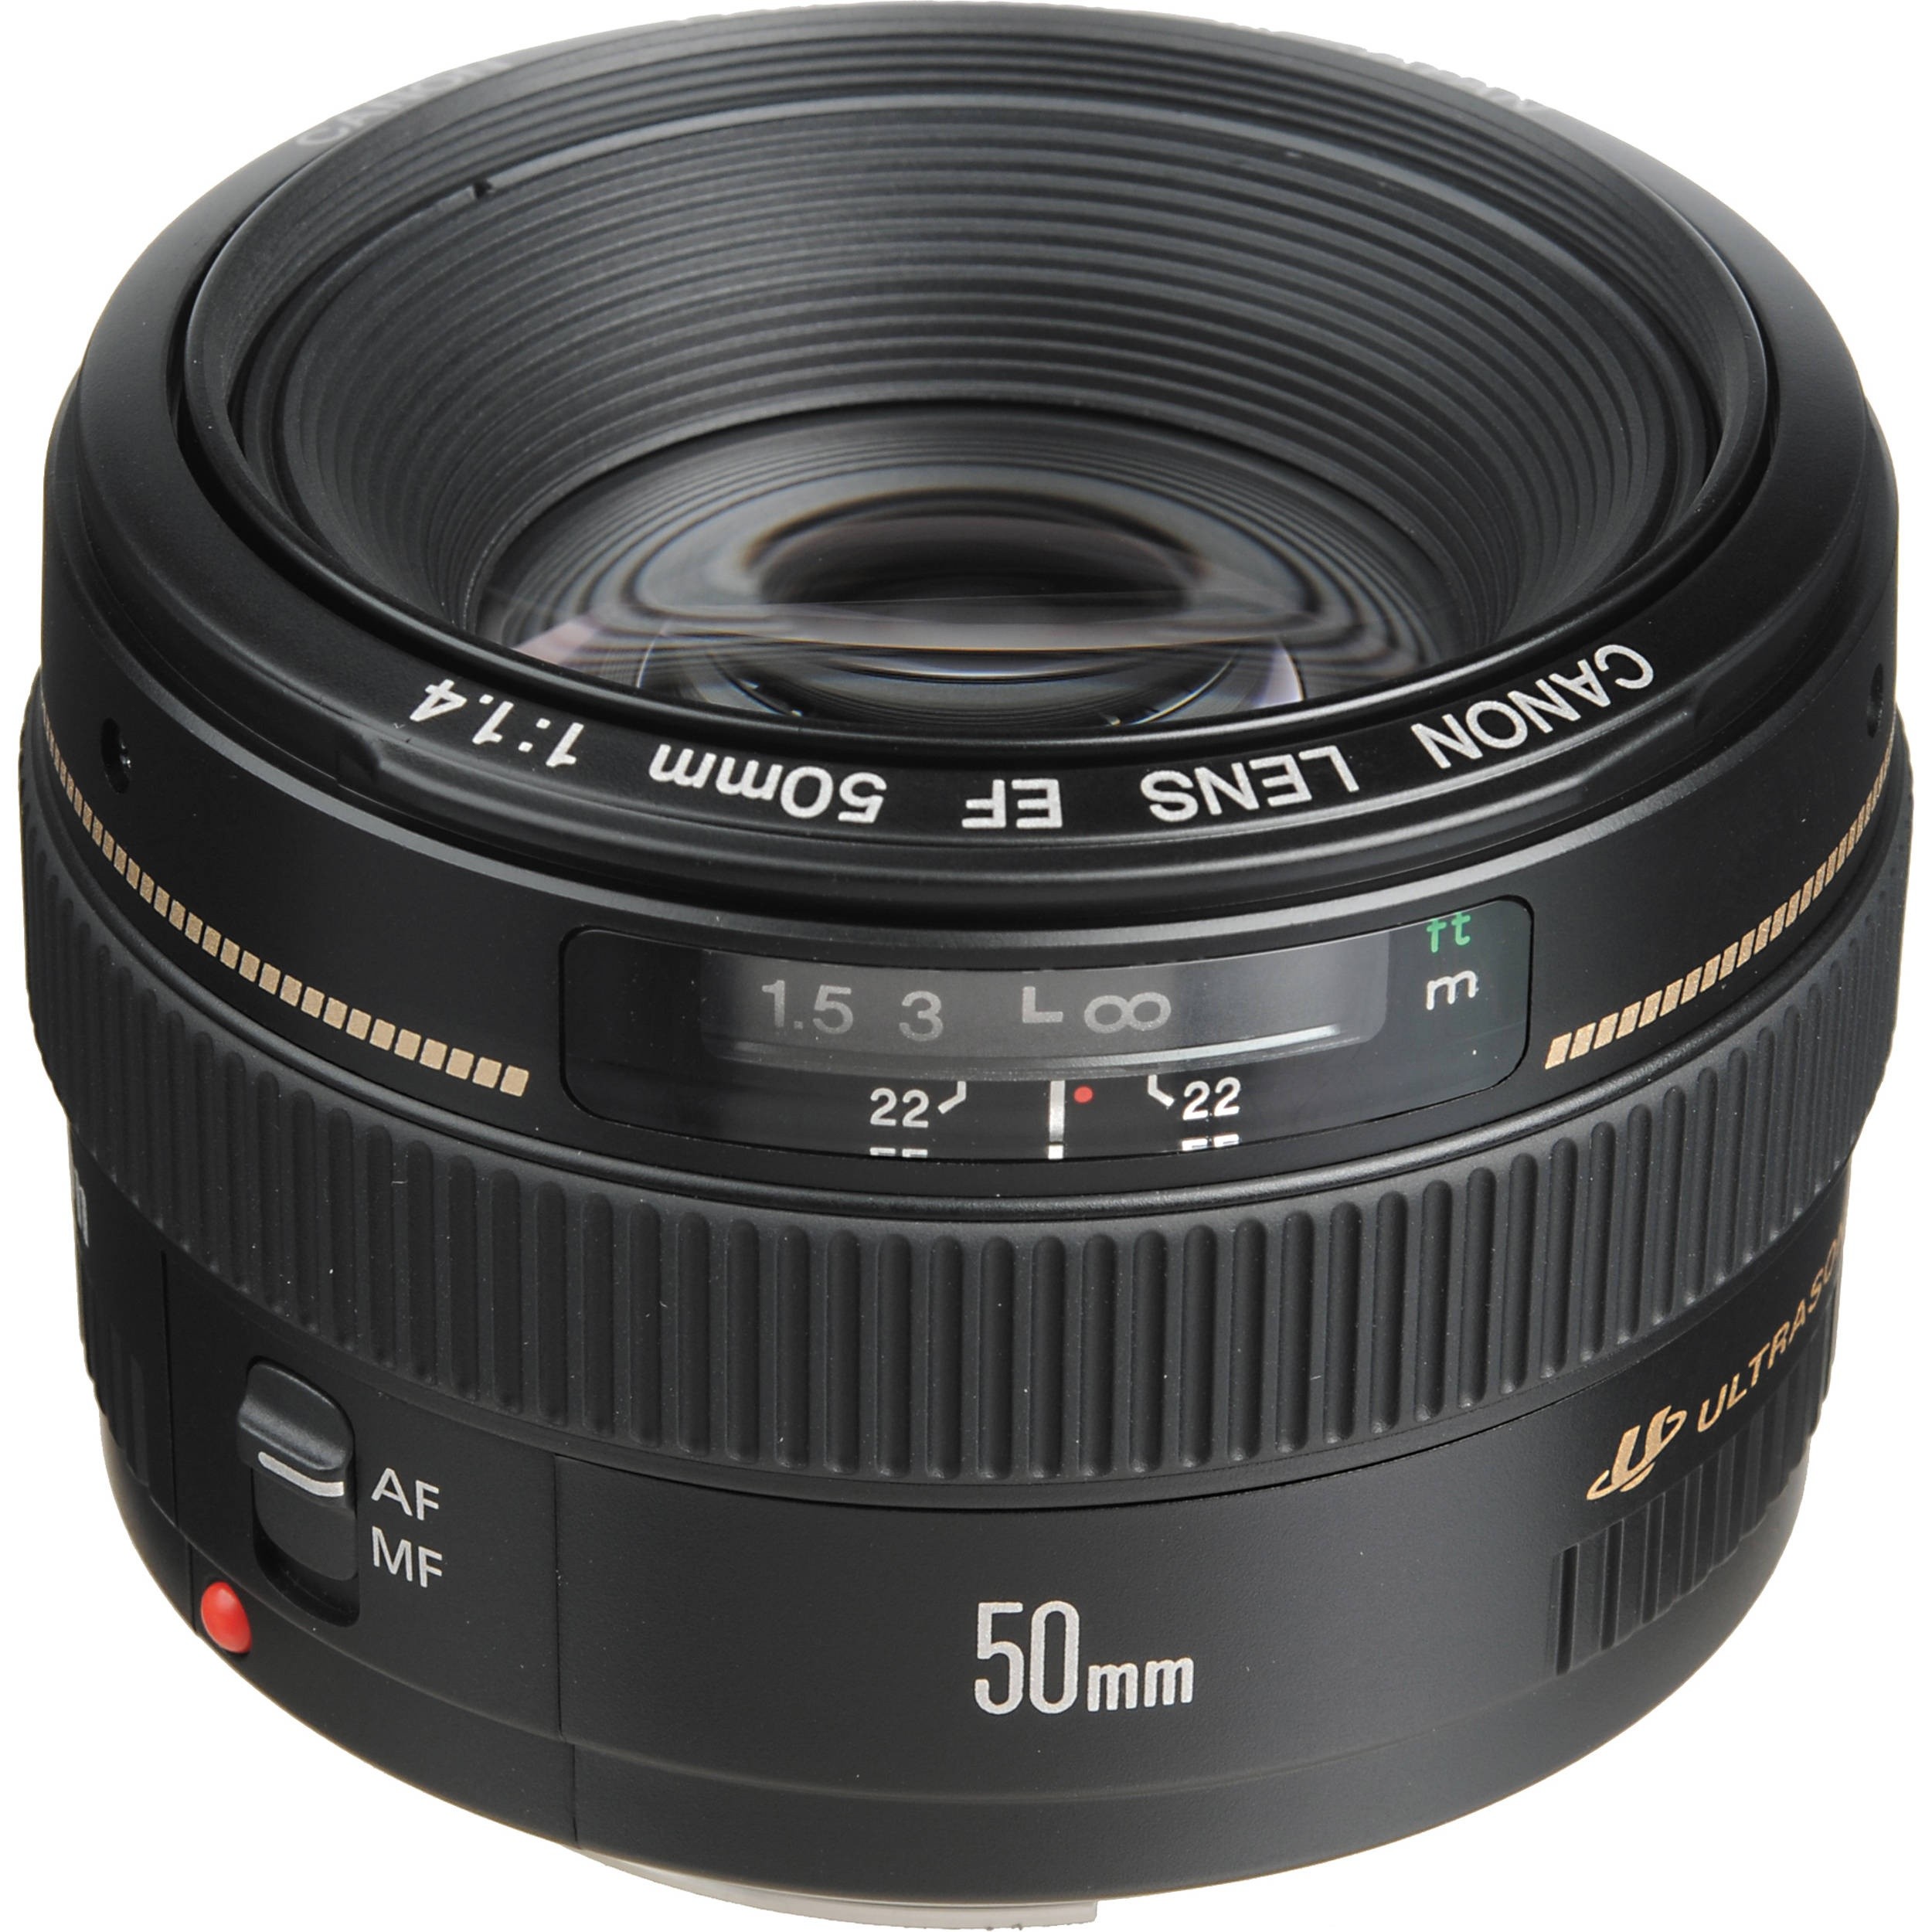 Купить камеру объектив. Canon EF 50mm f/1.4 USM. Объектив Canon Lens EF 50mm 1 1.4. Canon EF 50мм f/1,4 USM. Объектив Canon EF 50mm f/1.4 USM.